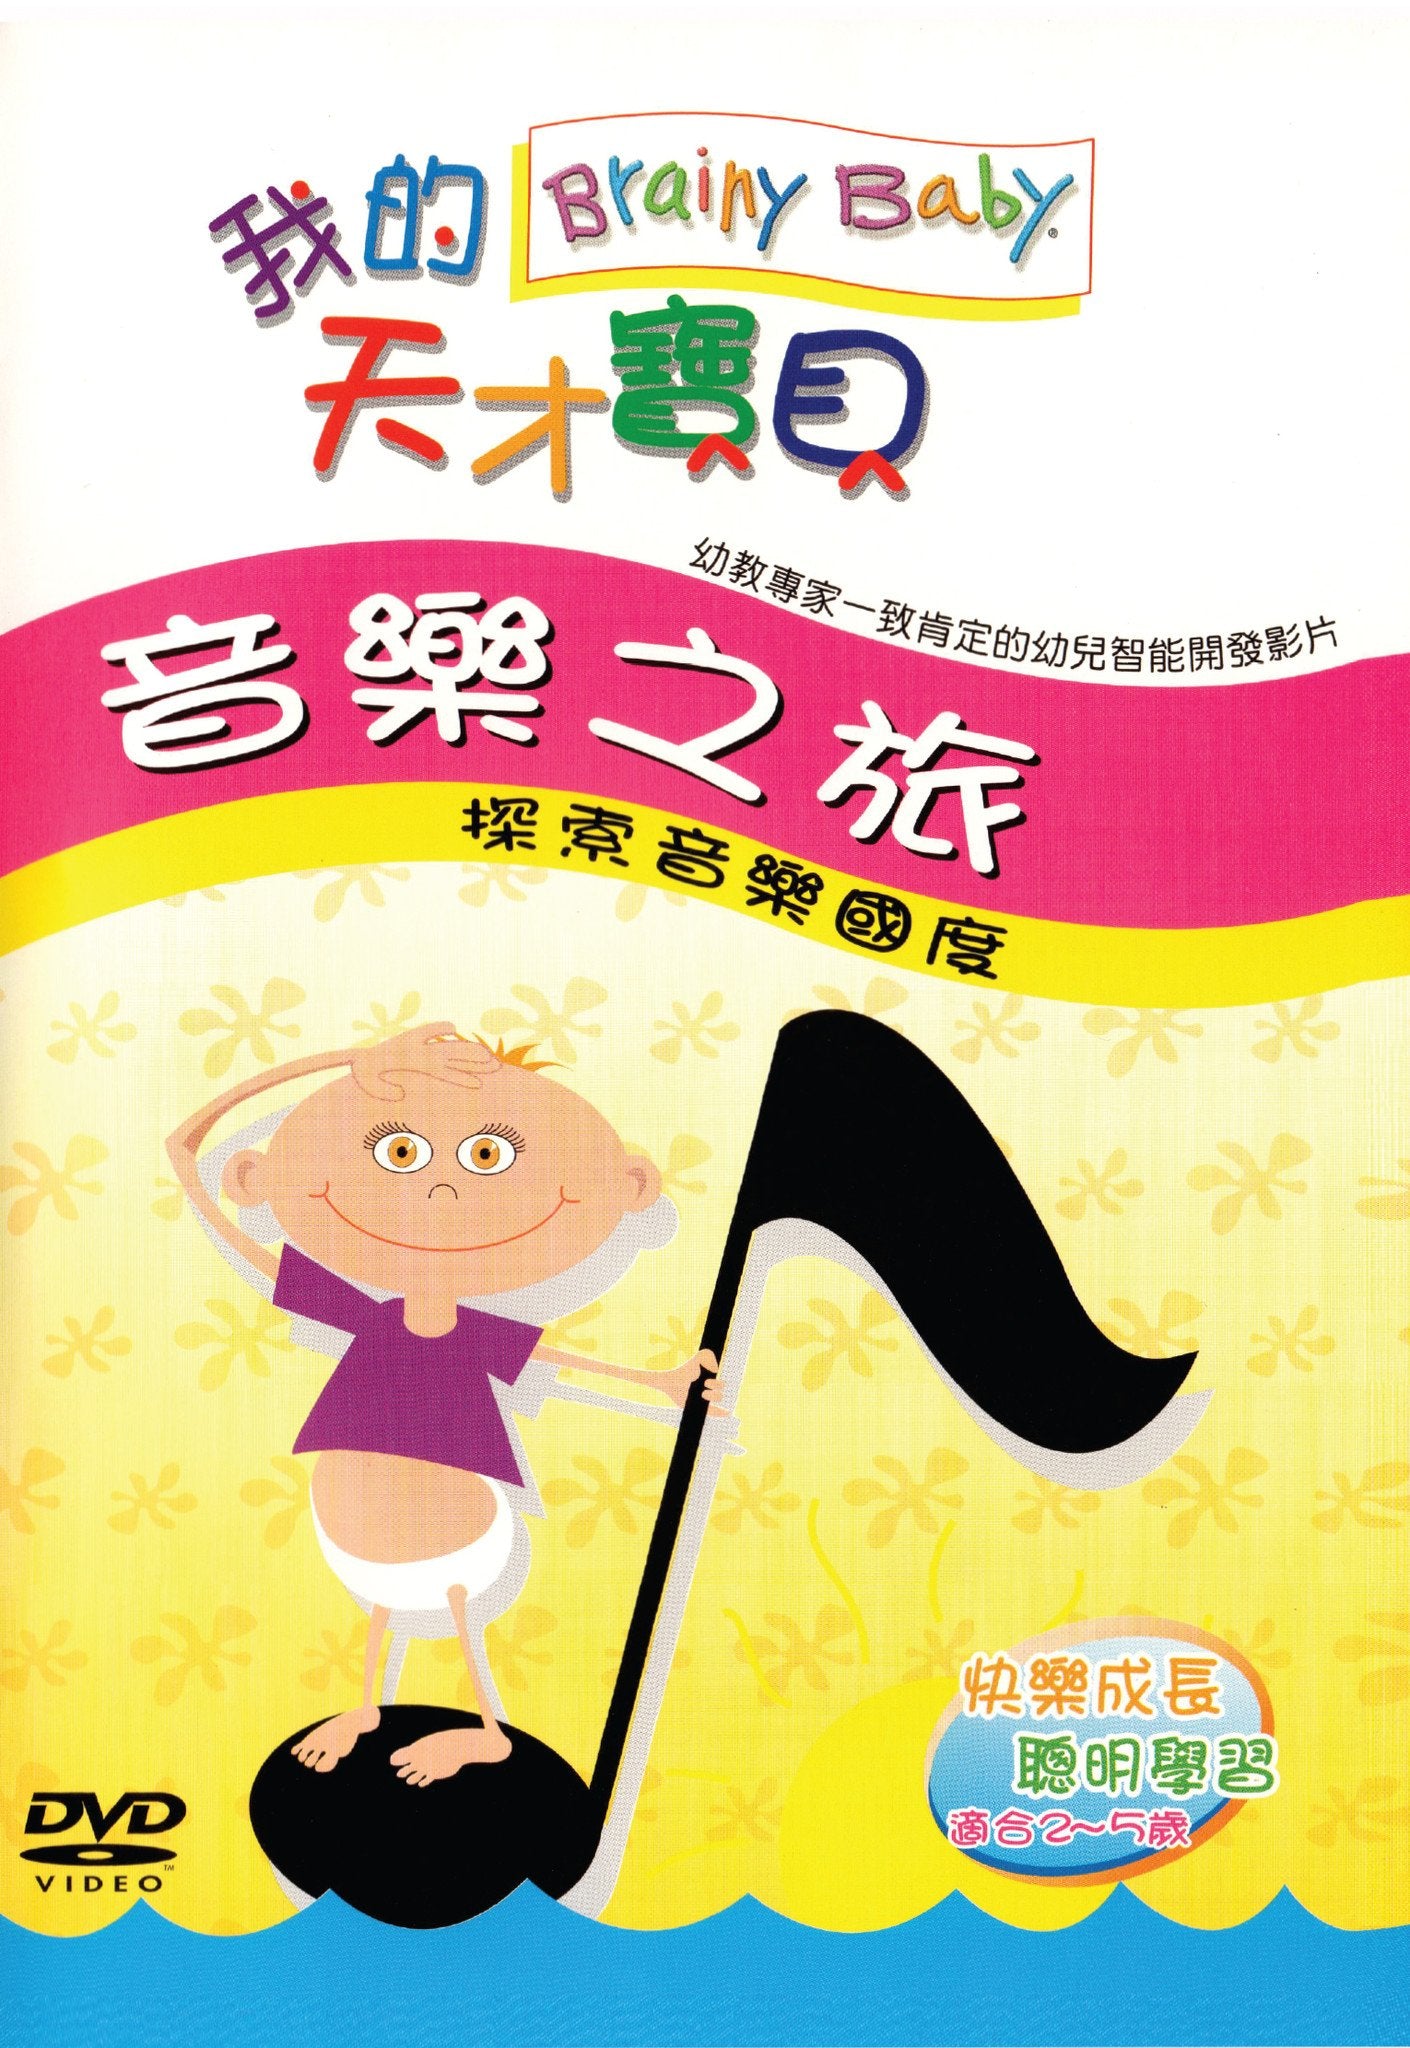 Brainy Baby Chinese Language Music DVD